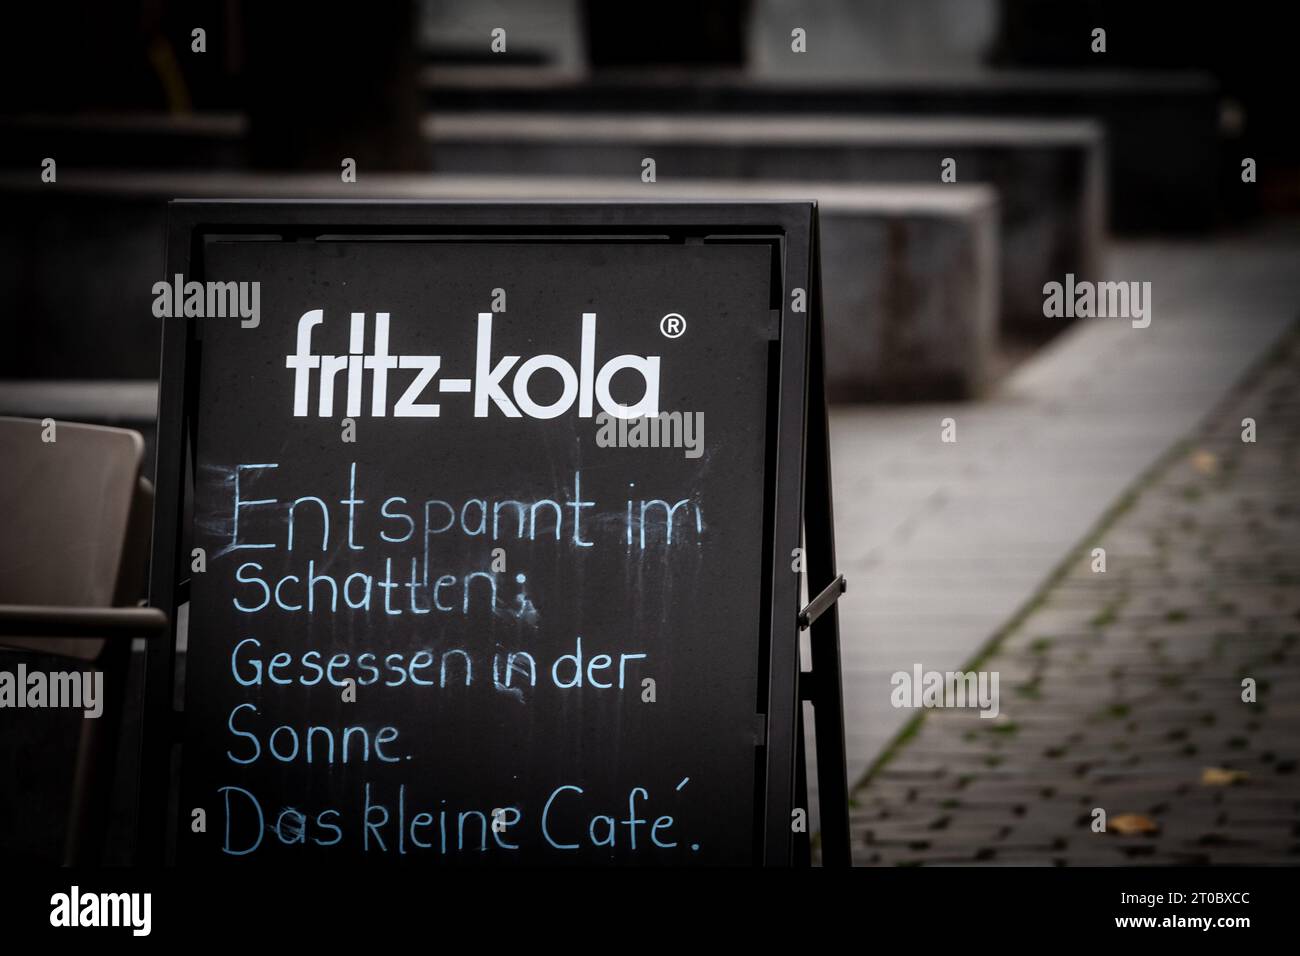 Immagine del logo nero di fritz kola cola scattata in un rivenditore ad Aquisgrana, Germania. La Fritz-kola (stilizzata come fritz-kola) è una bevanda analcolica prodotta nel nord Foto Stock